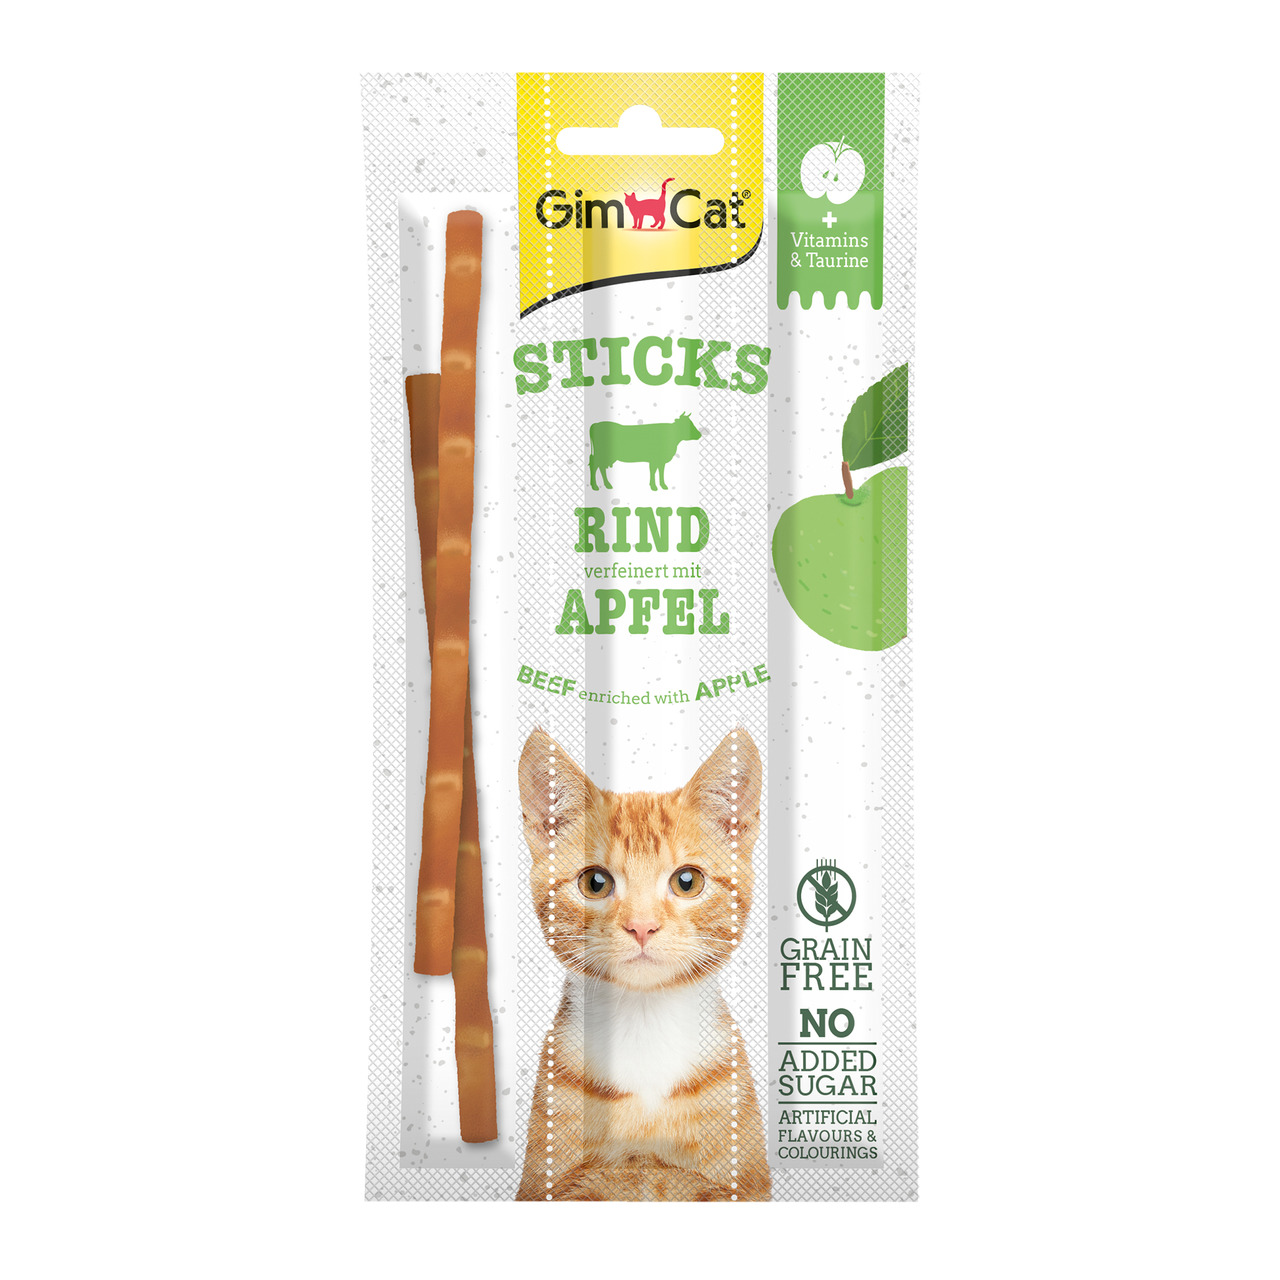 Sparpaket 2 x 15 g GimCat Superfood Duo-Sticks mit Rind & Apfelgeschmack Katzen Snack